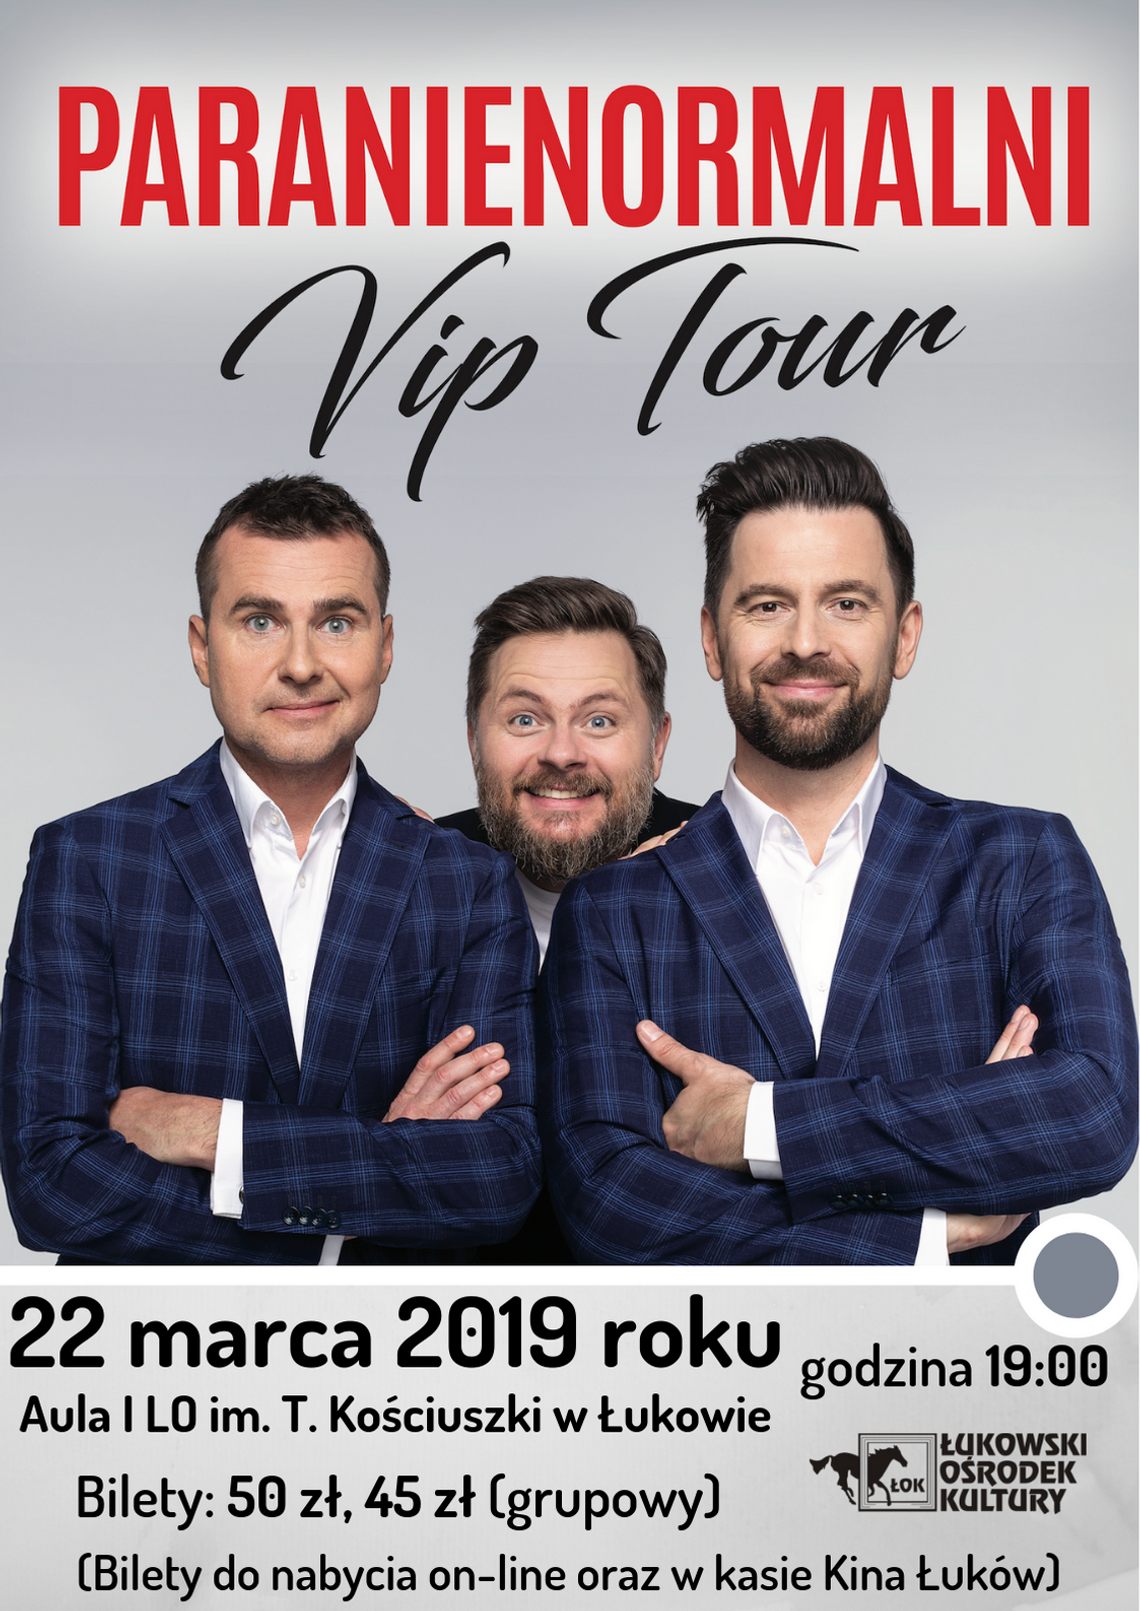 Kabaret Paranienormalni w Łukowie już 22 marca 2019 roku!